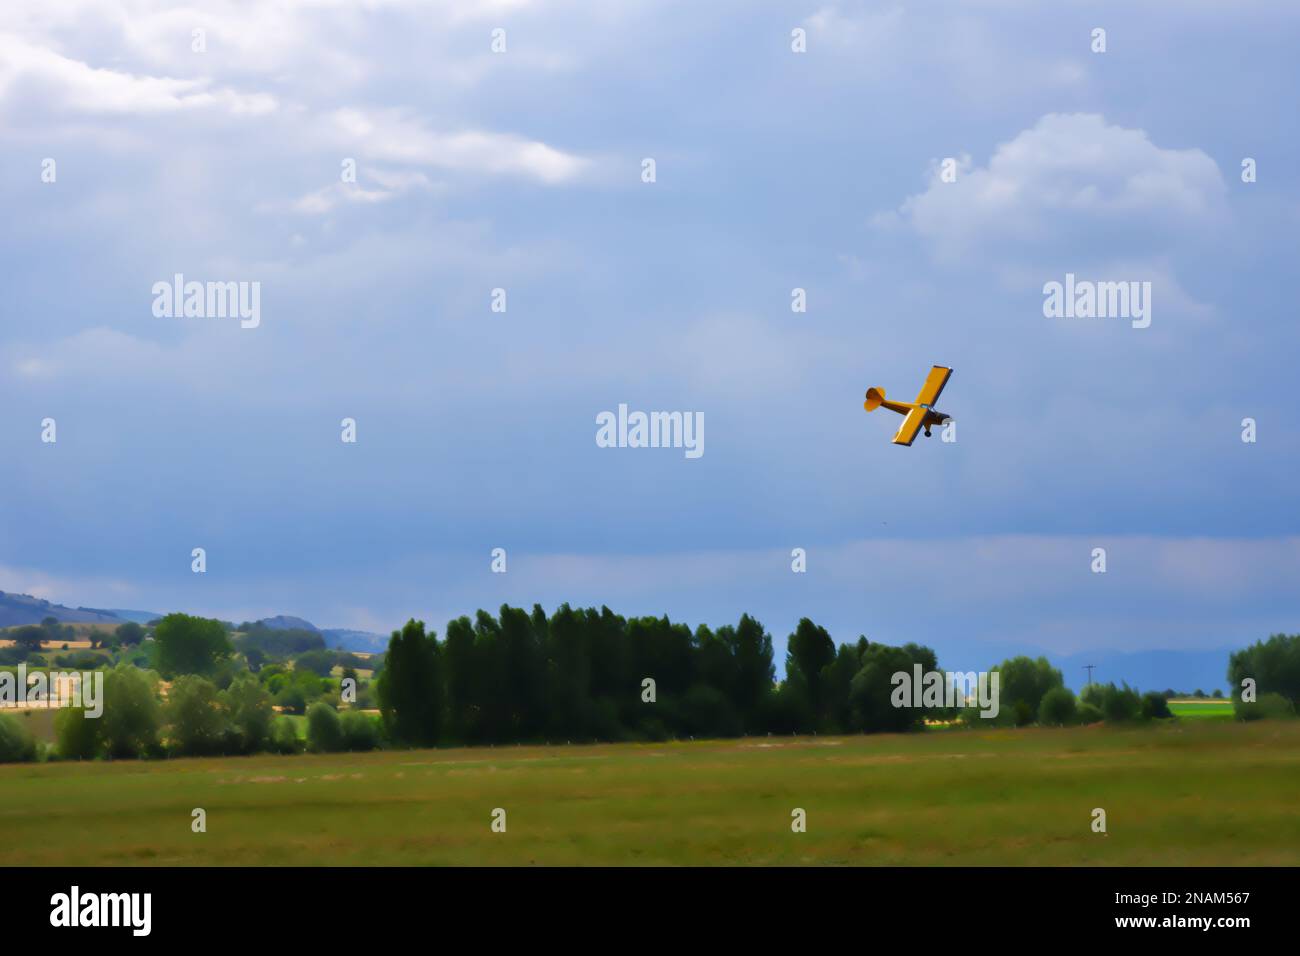 Velivolo giallo a motore singolo che si manovra vicino al terreno con cielo nuvoloso sullo sfondo Foto Stock